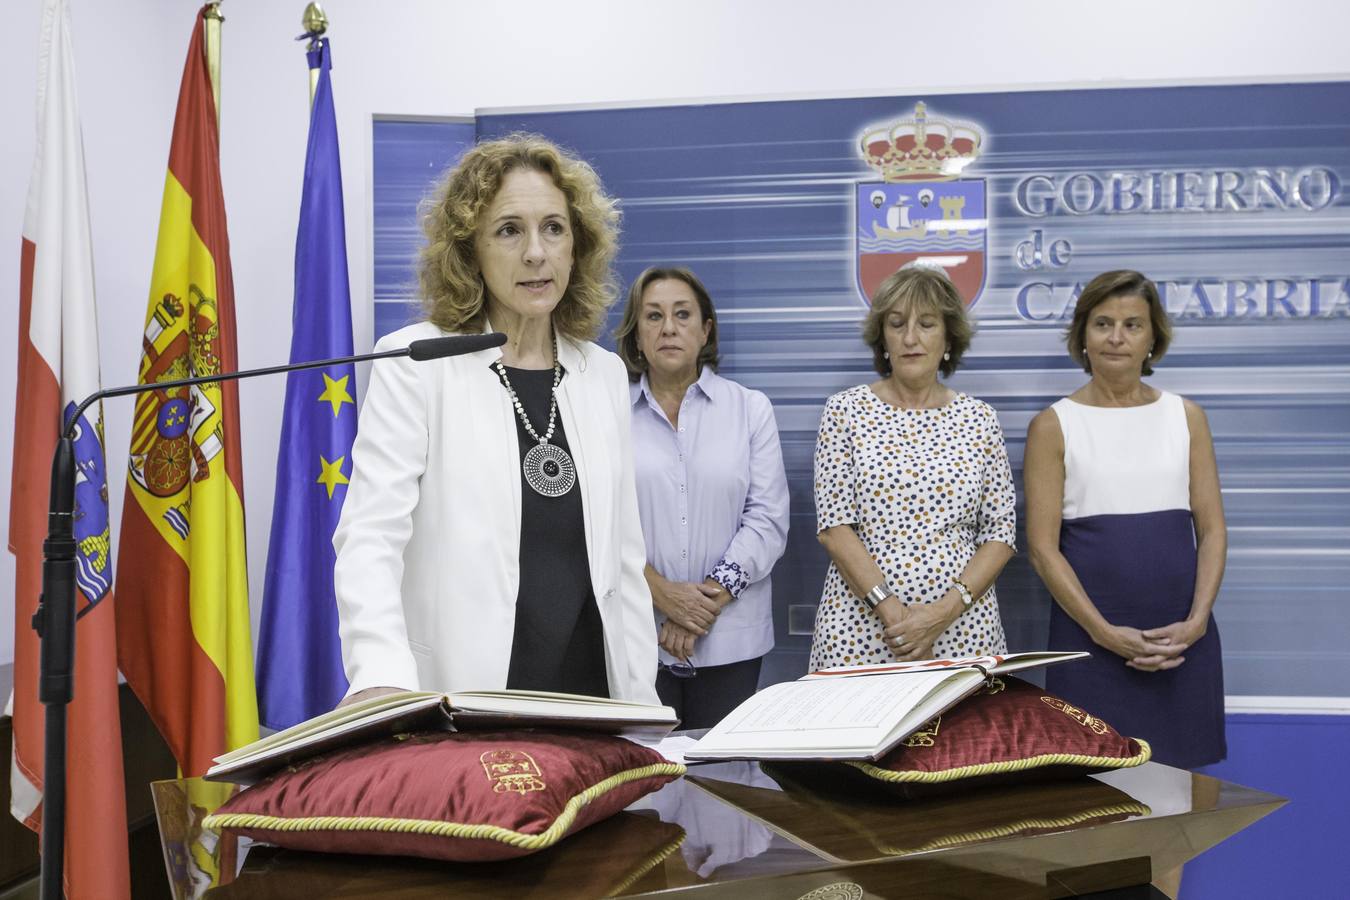 Juramento de los nuevos cargos de la Consejería de Cultura en el Palacio de Gobierno